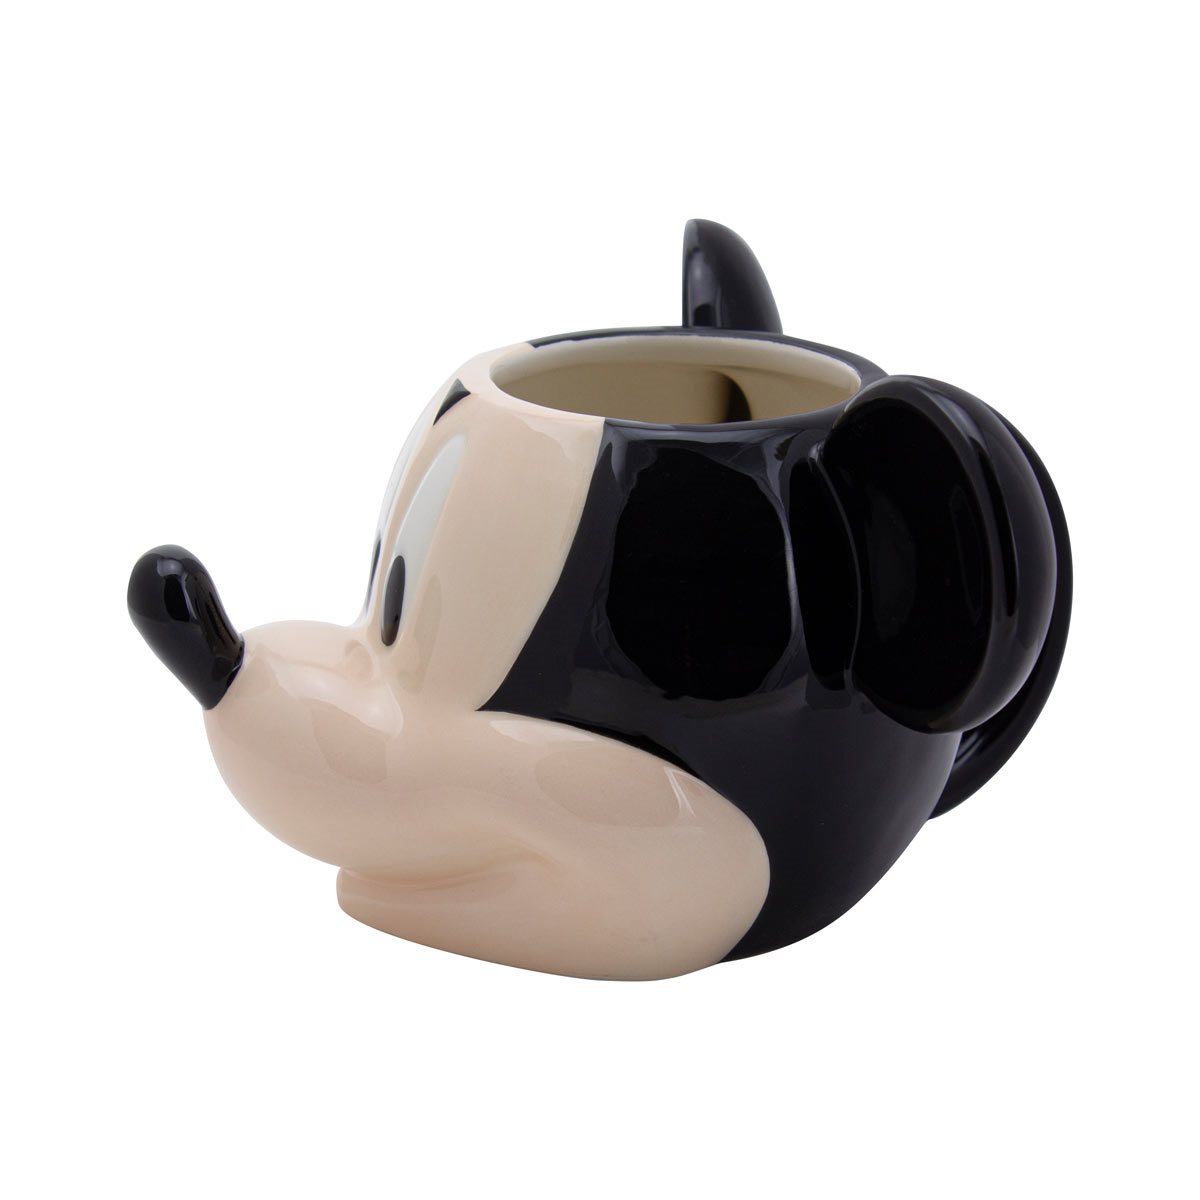 Mickey Mouse Figural Mug